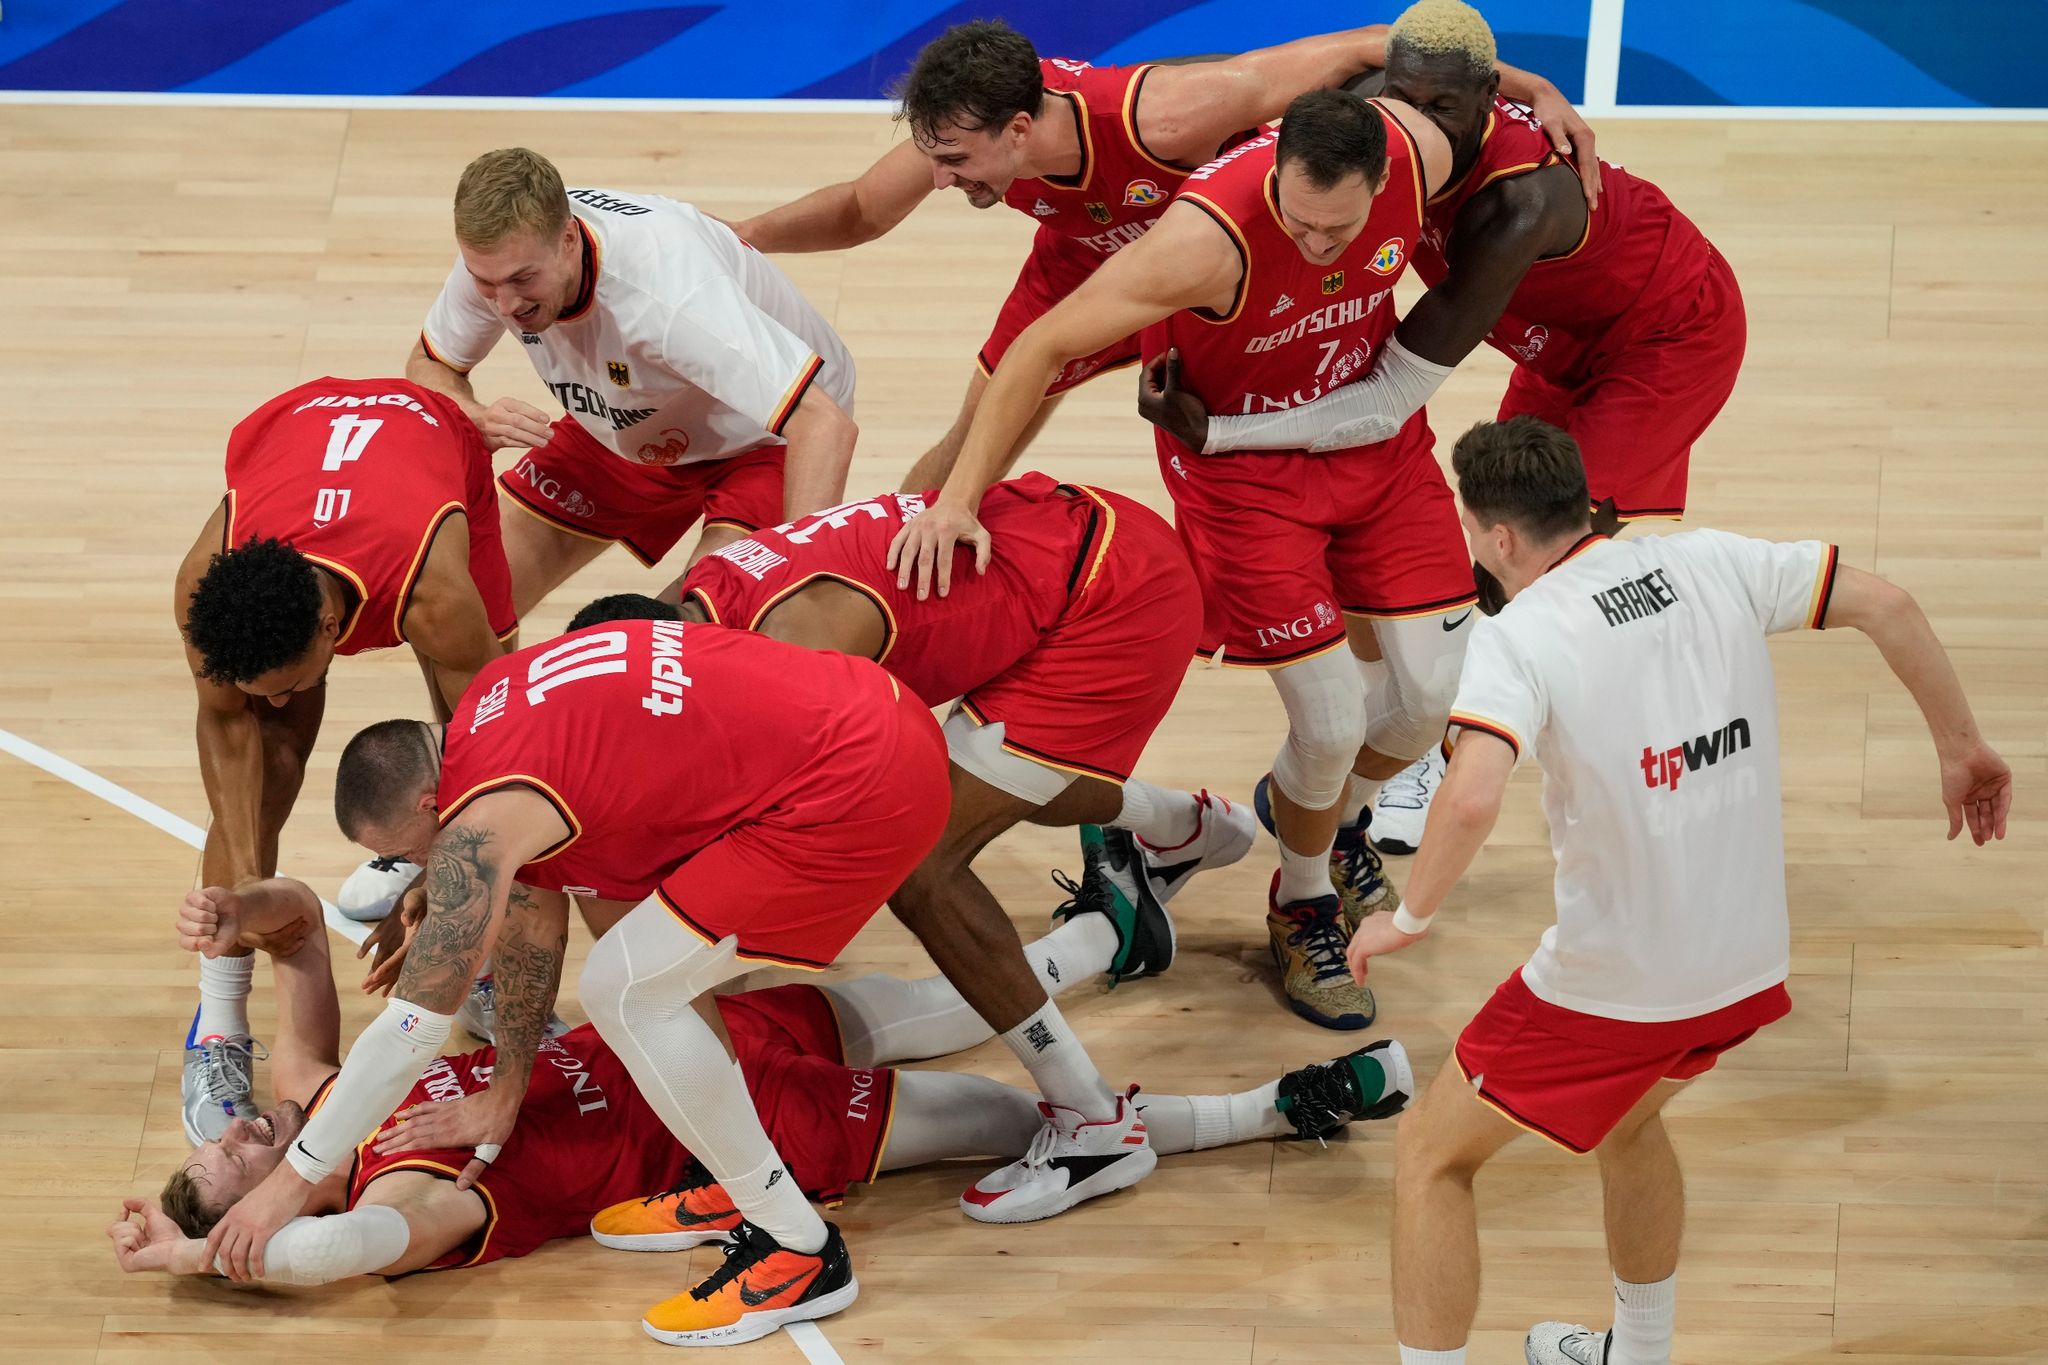 Basketball-WM Finale Deutschland gegen Serbien live im TV und Livestream